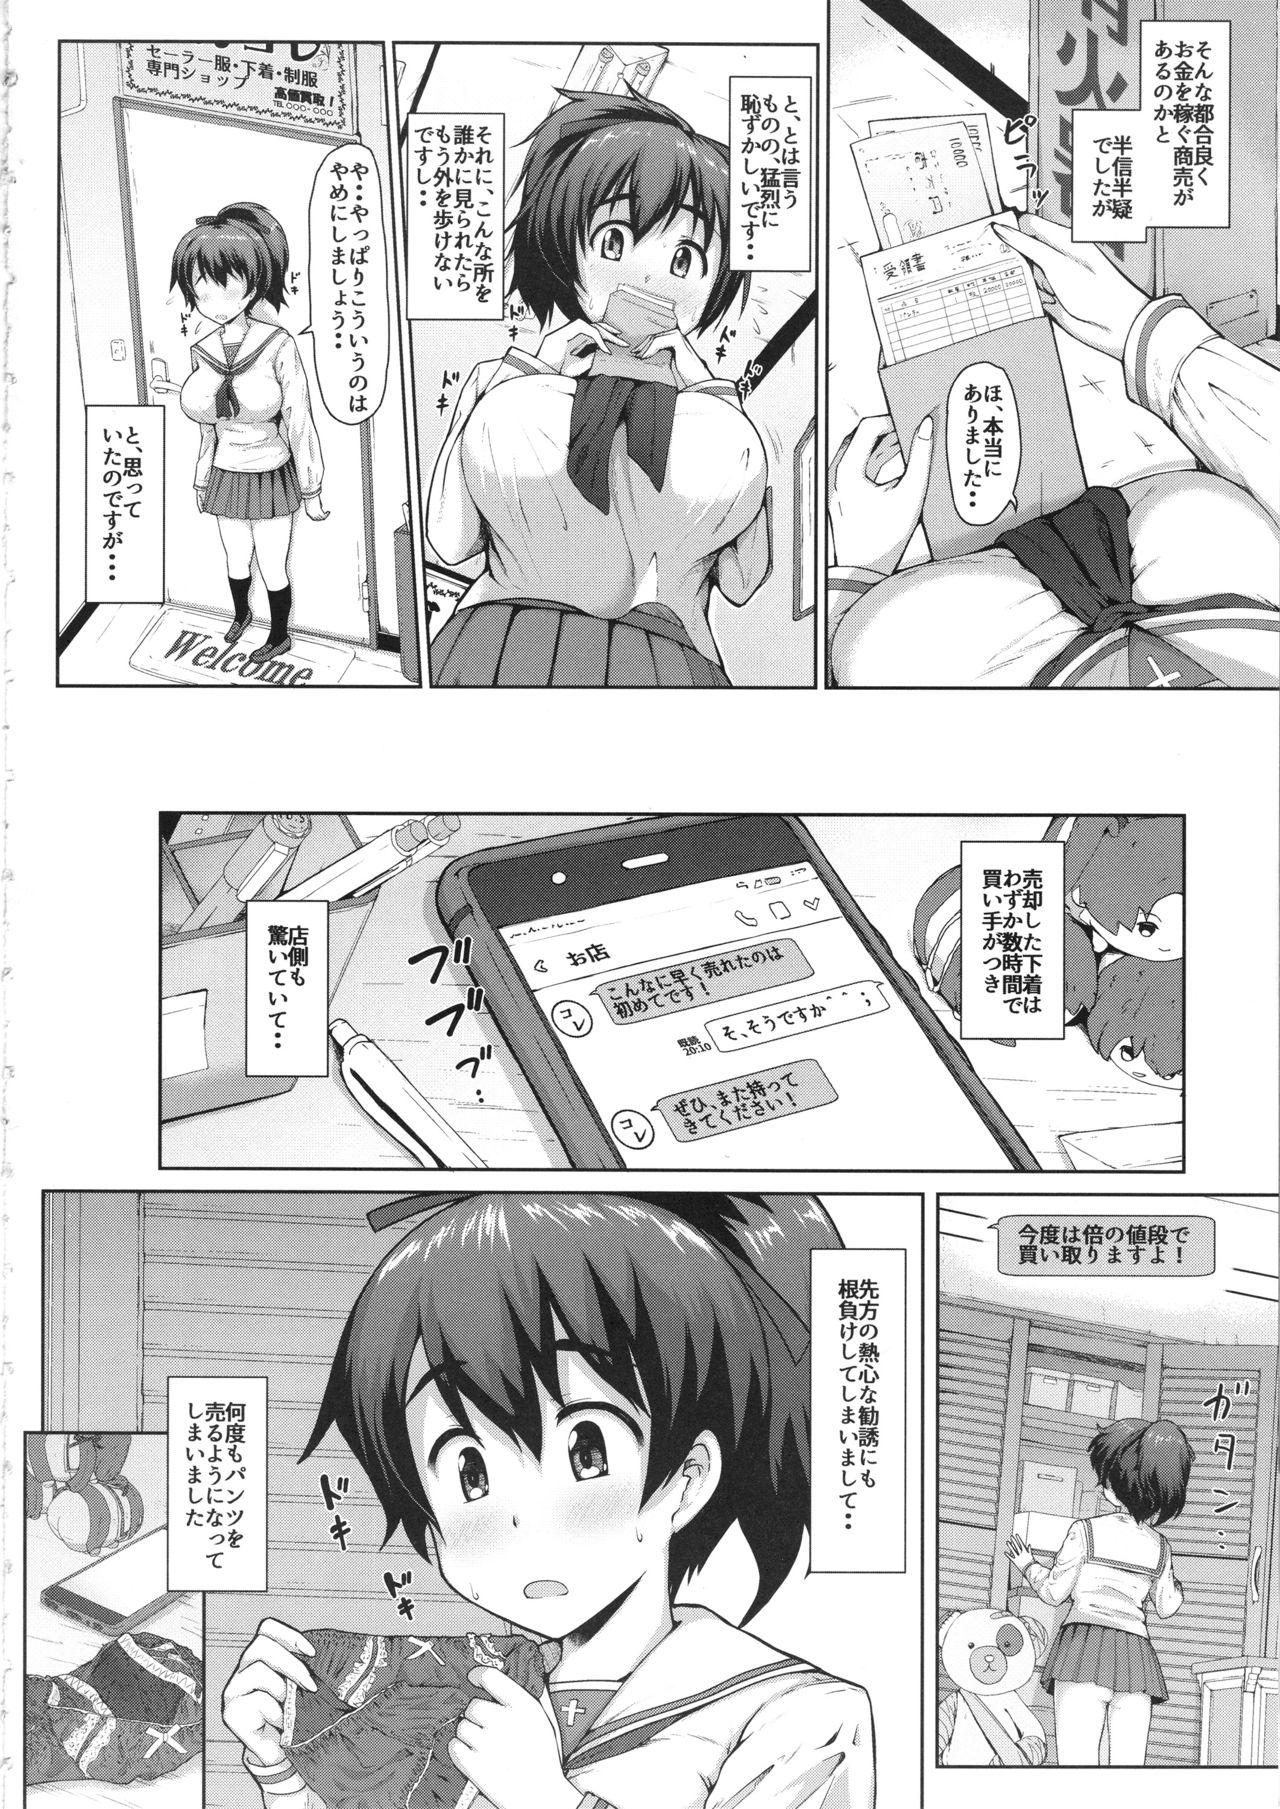 Free Yuzu-chan no Renkinjutsu - Girls und panzer Tats - Page 3